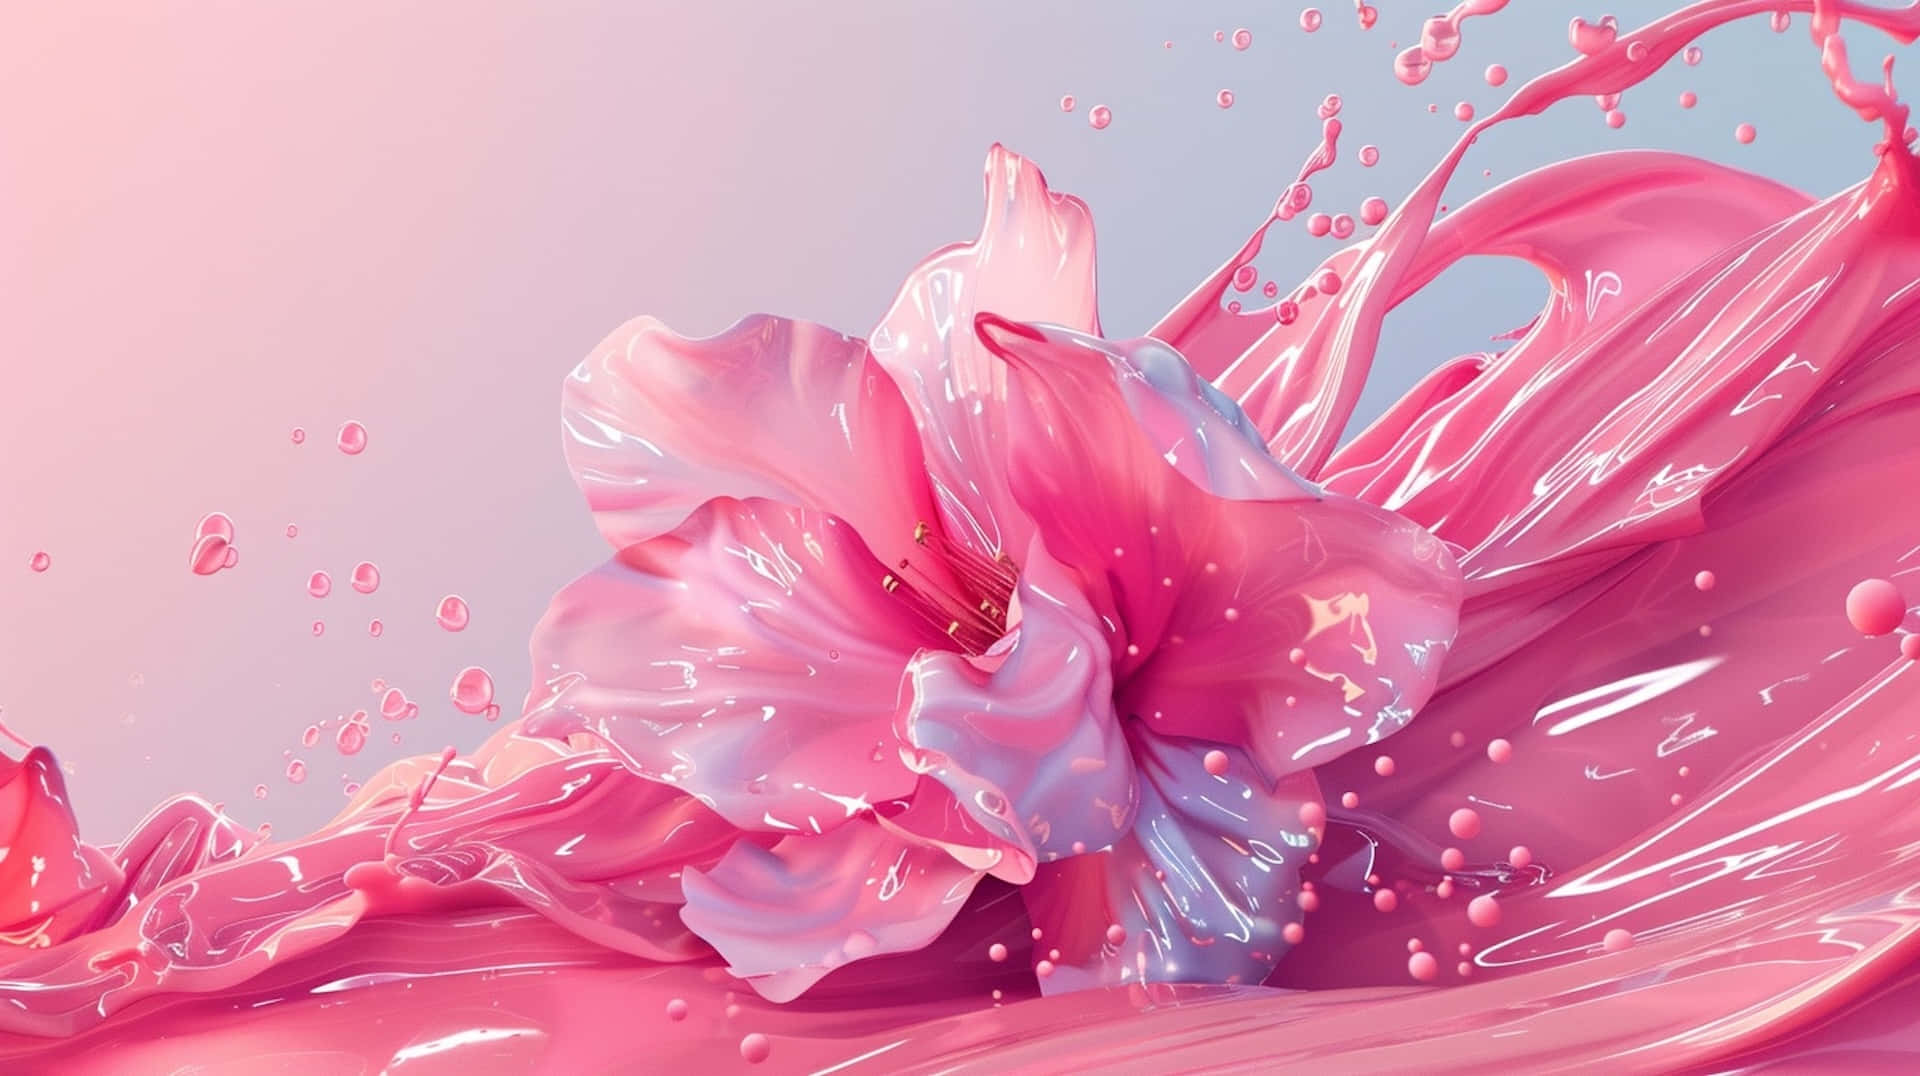 Pink Fluid Art3 D Render Wallpaper